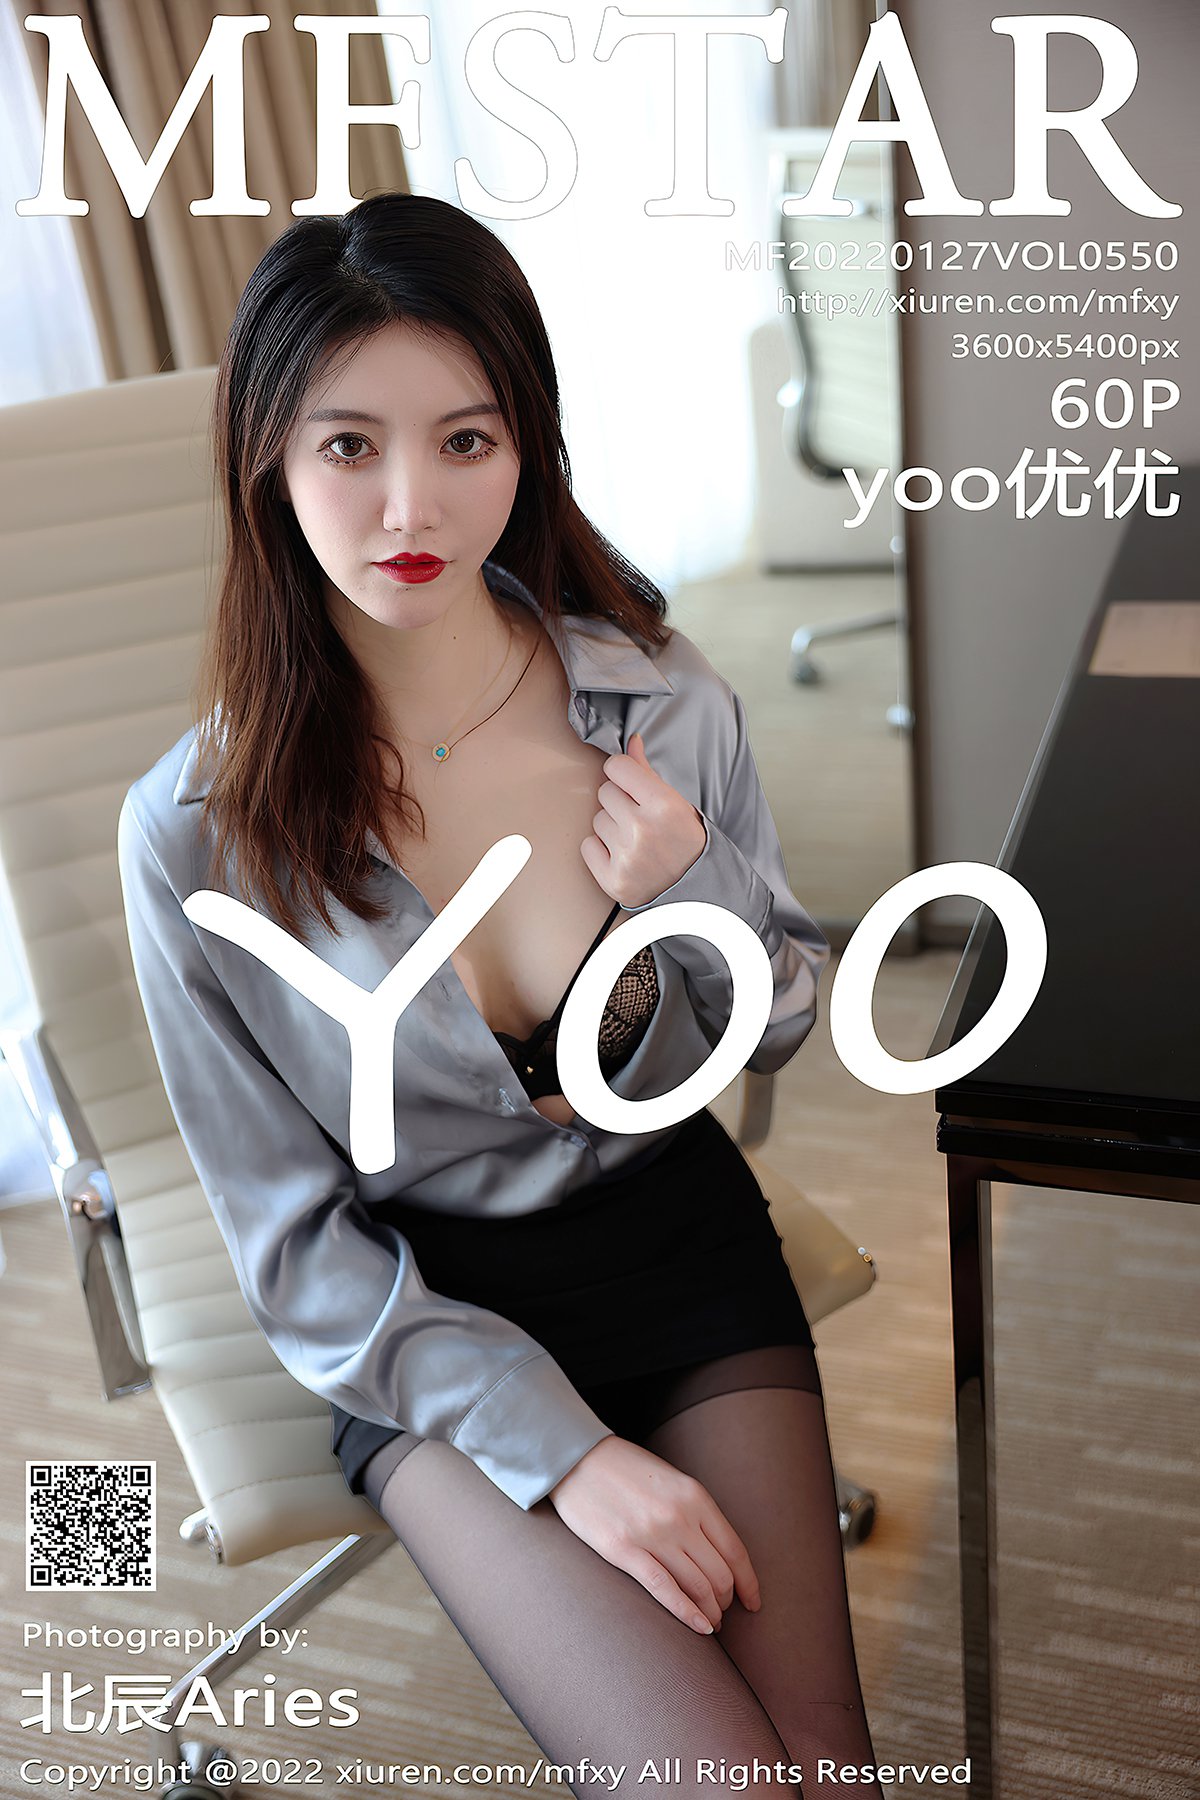 MFStar Vol.550 Yoo You You – Larose.VIP